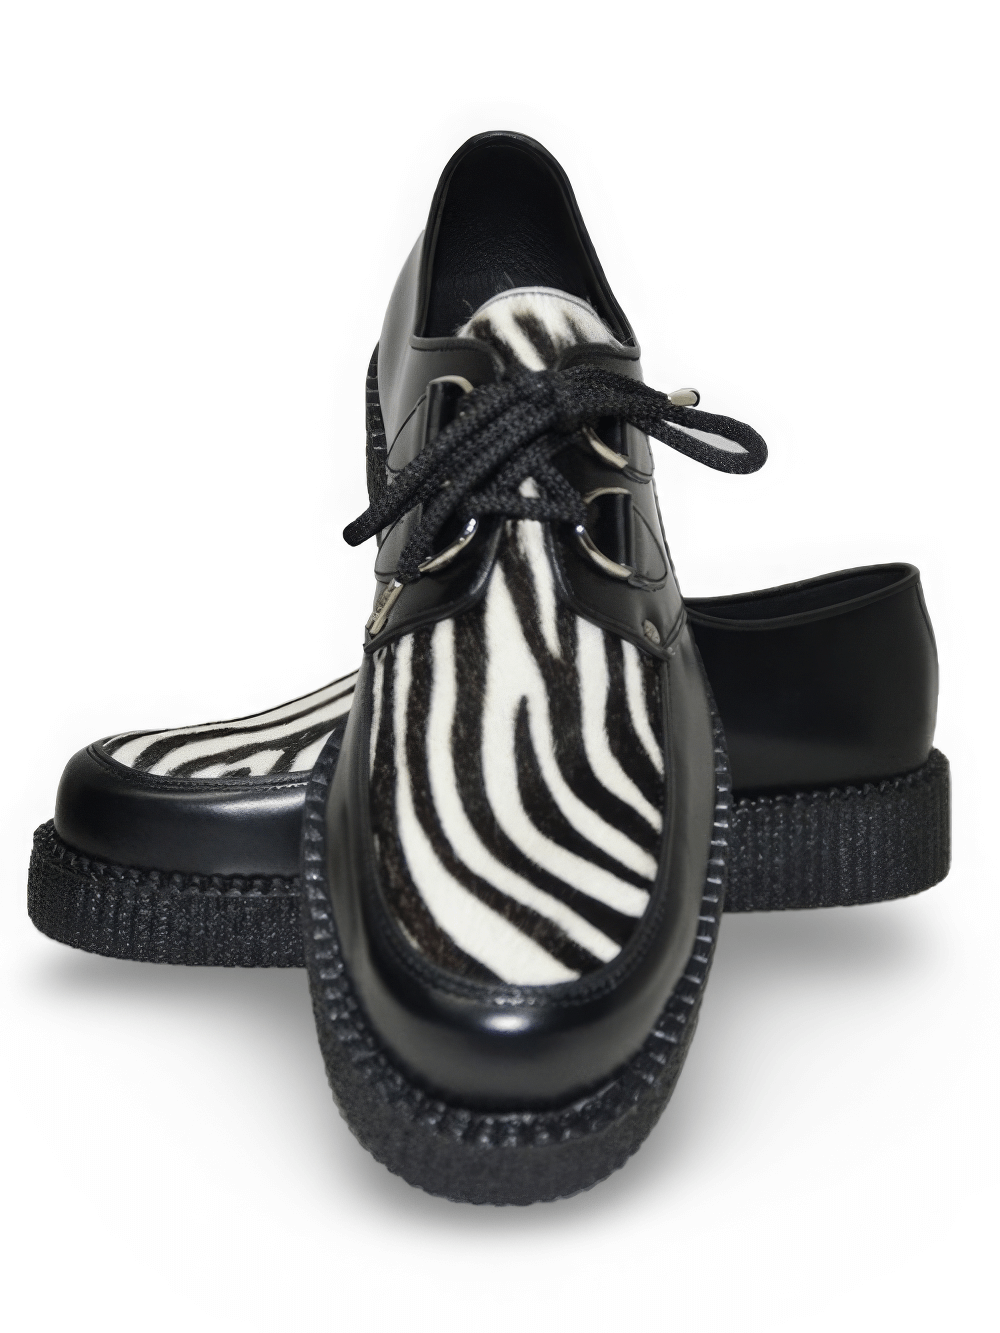 Unisex-Creeper-Schuhe aus Leder und Fell mit Gummisohle